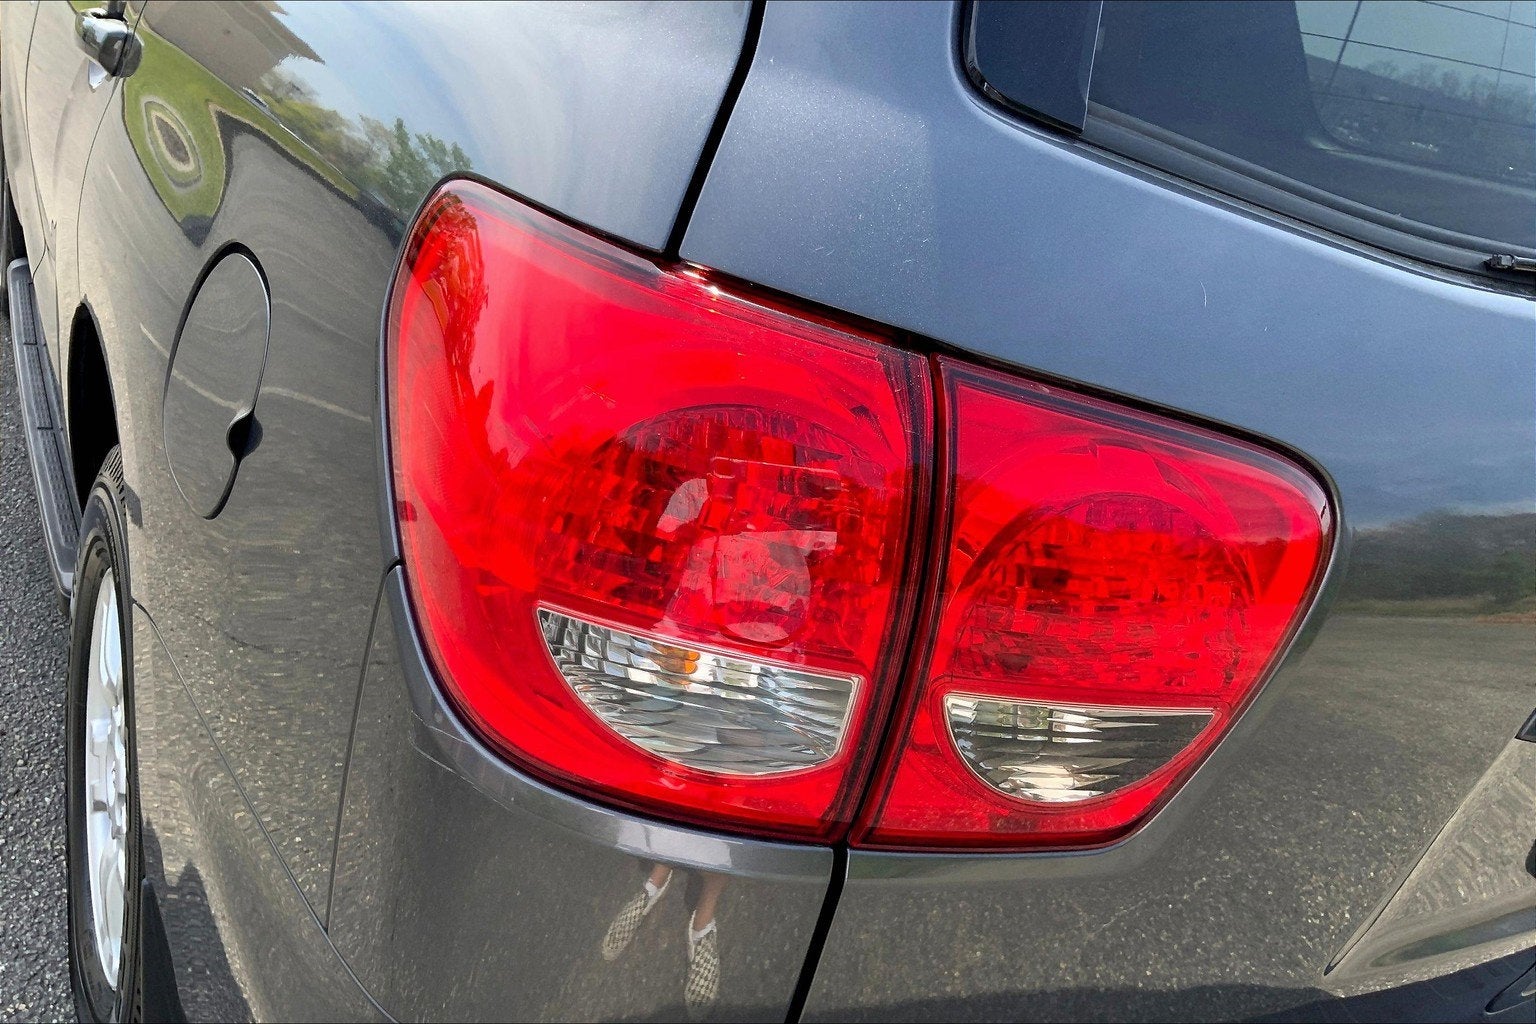 2016 Toyota Sequoia SR5